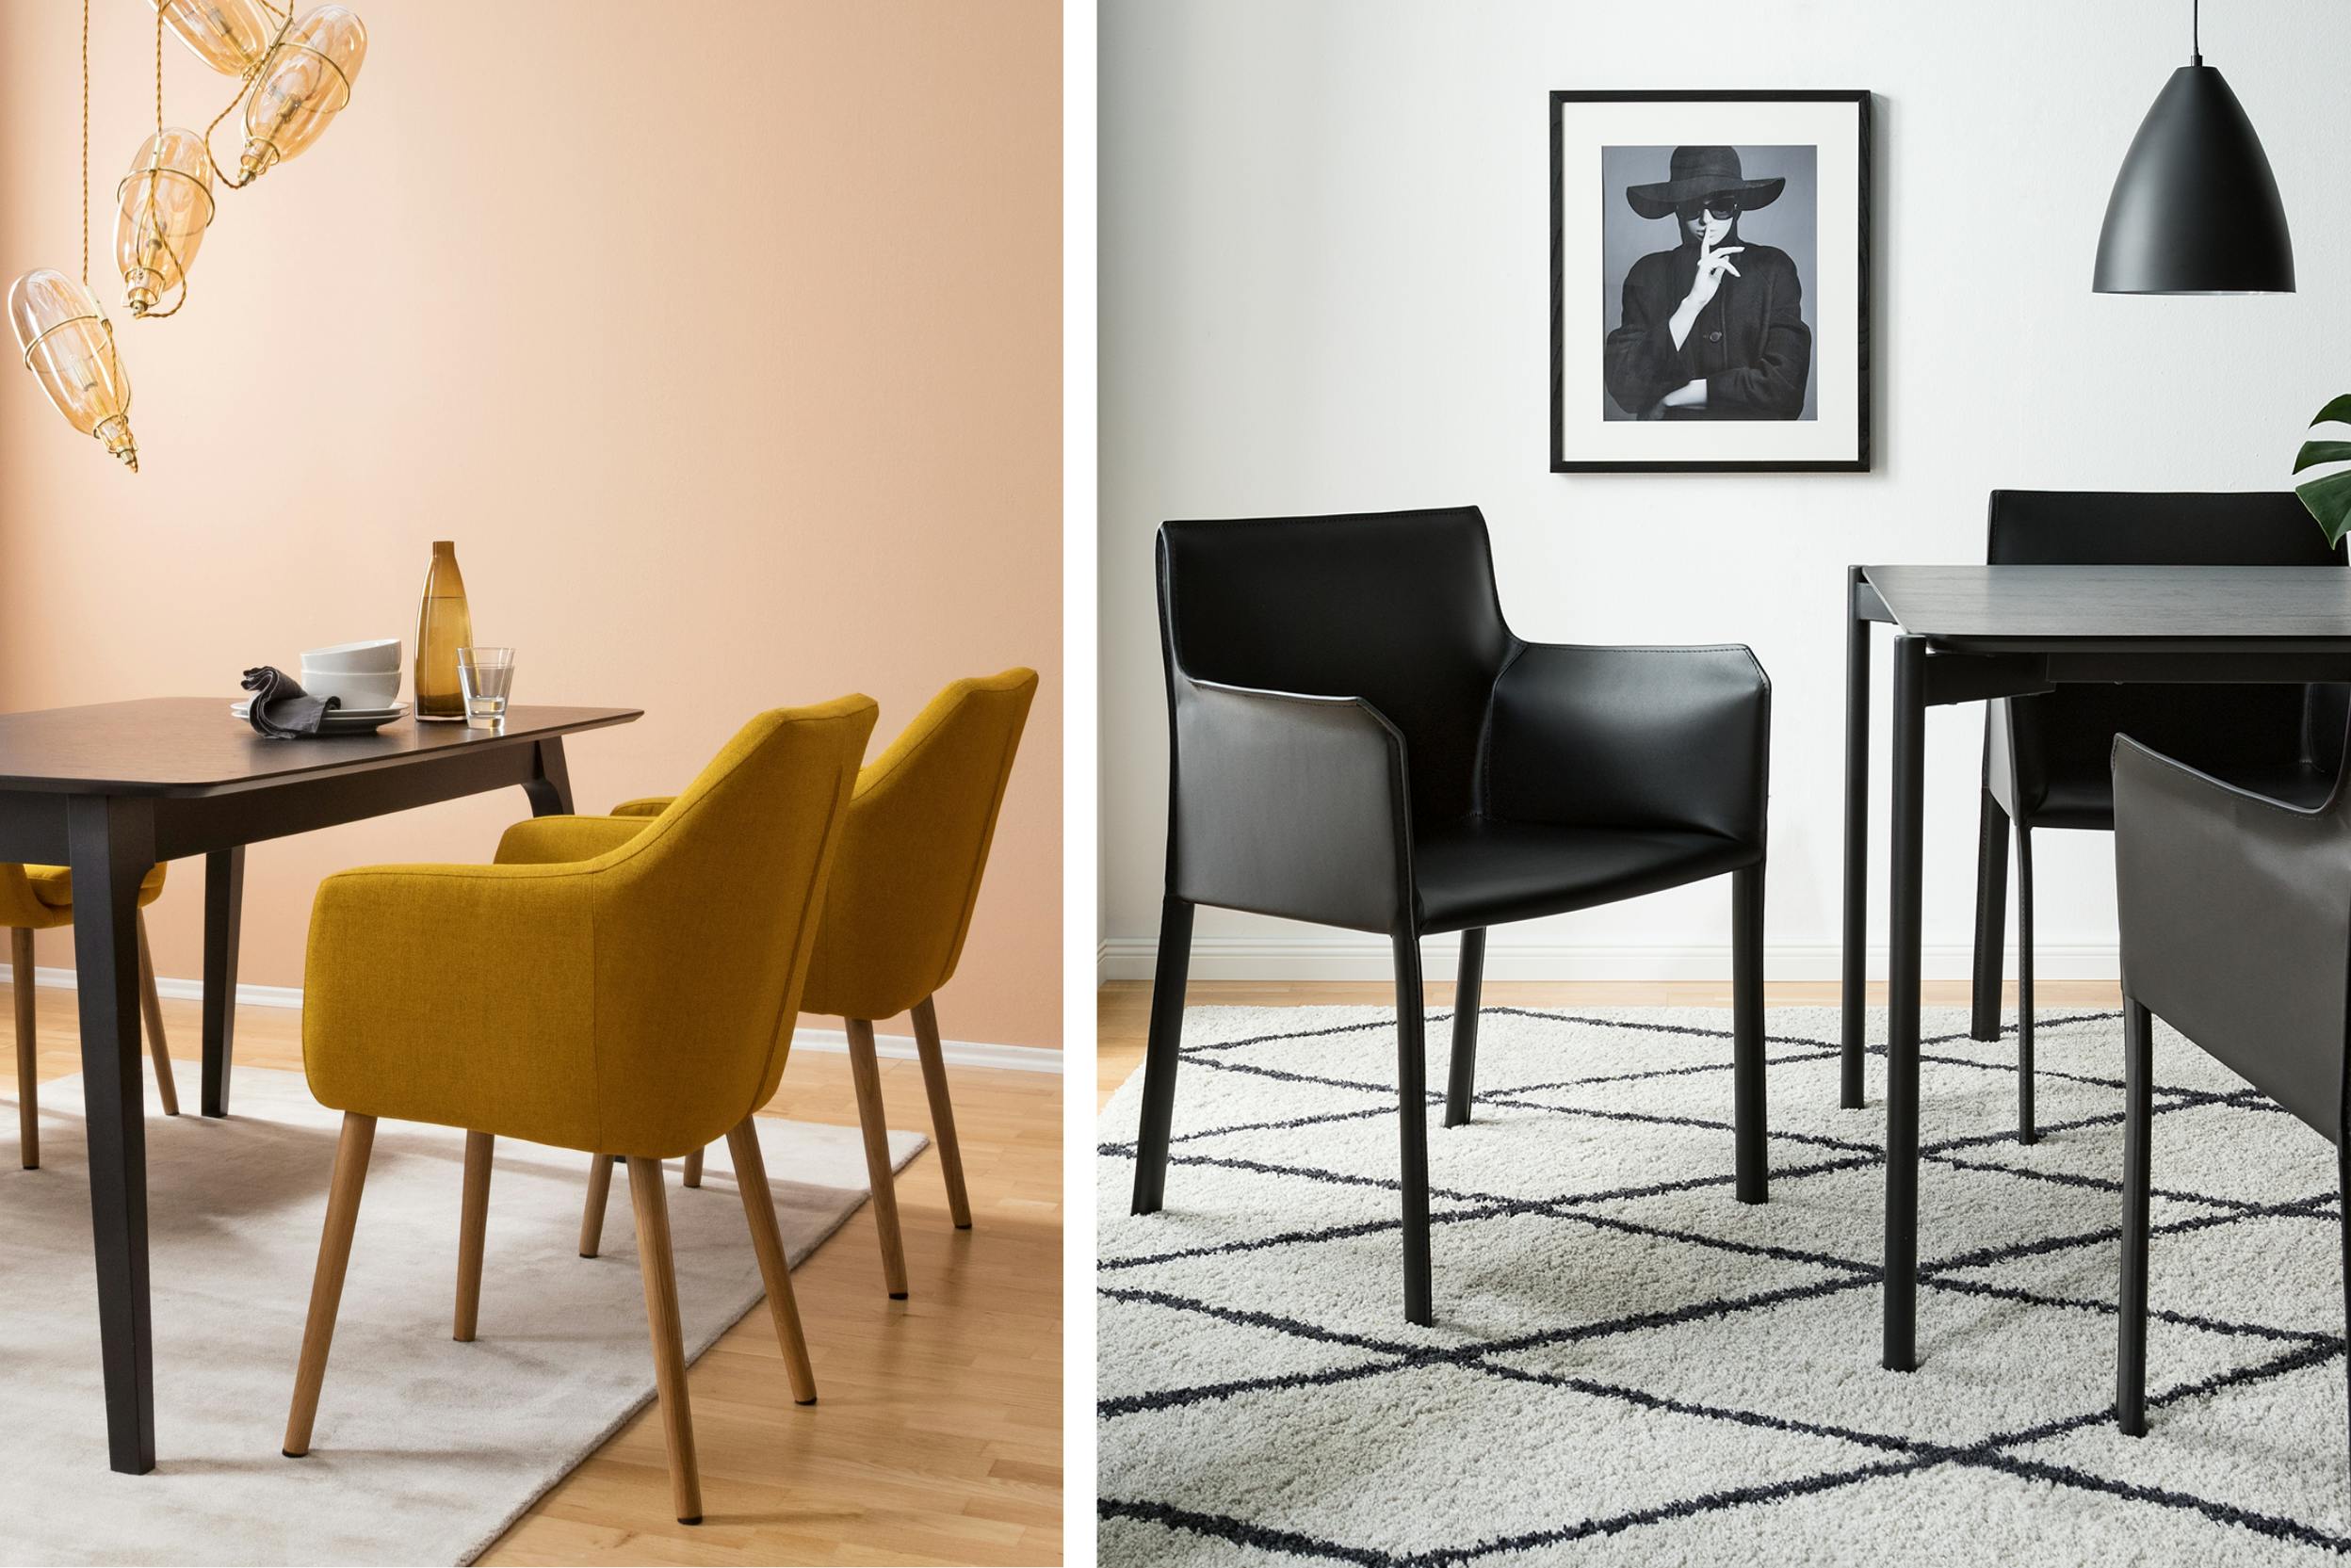 Esszimmer in kontraststarkem Schwarz-Weiß oder schwarzer Tisch mit sonnig gelben Stühlen kombiniert